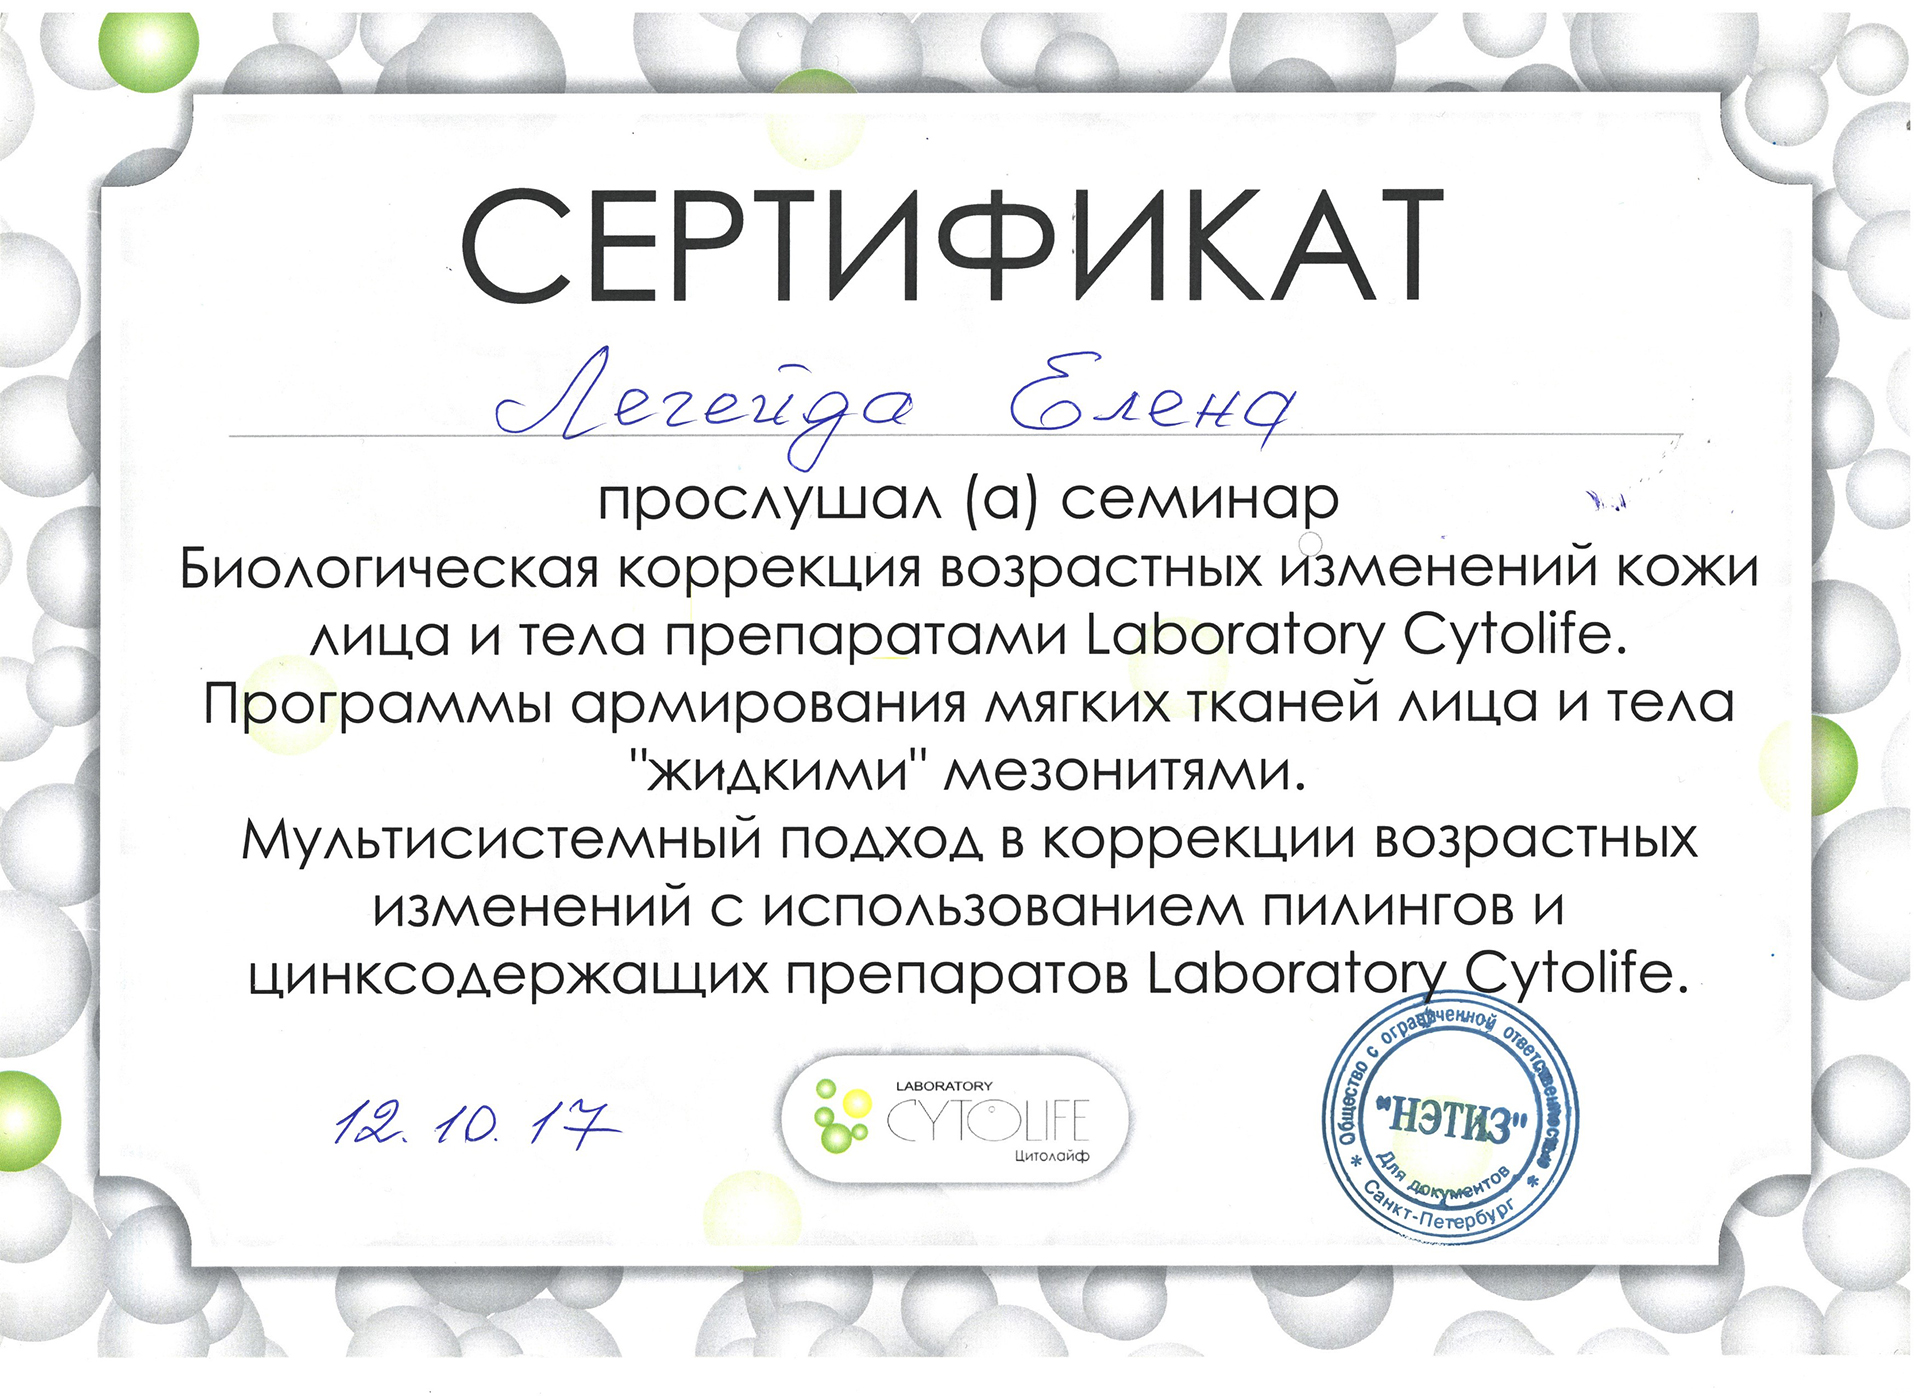 Сертификат — Семинар Биологическая коррекция. Легейда Елена Валерьевна